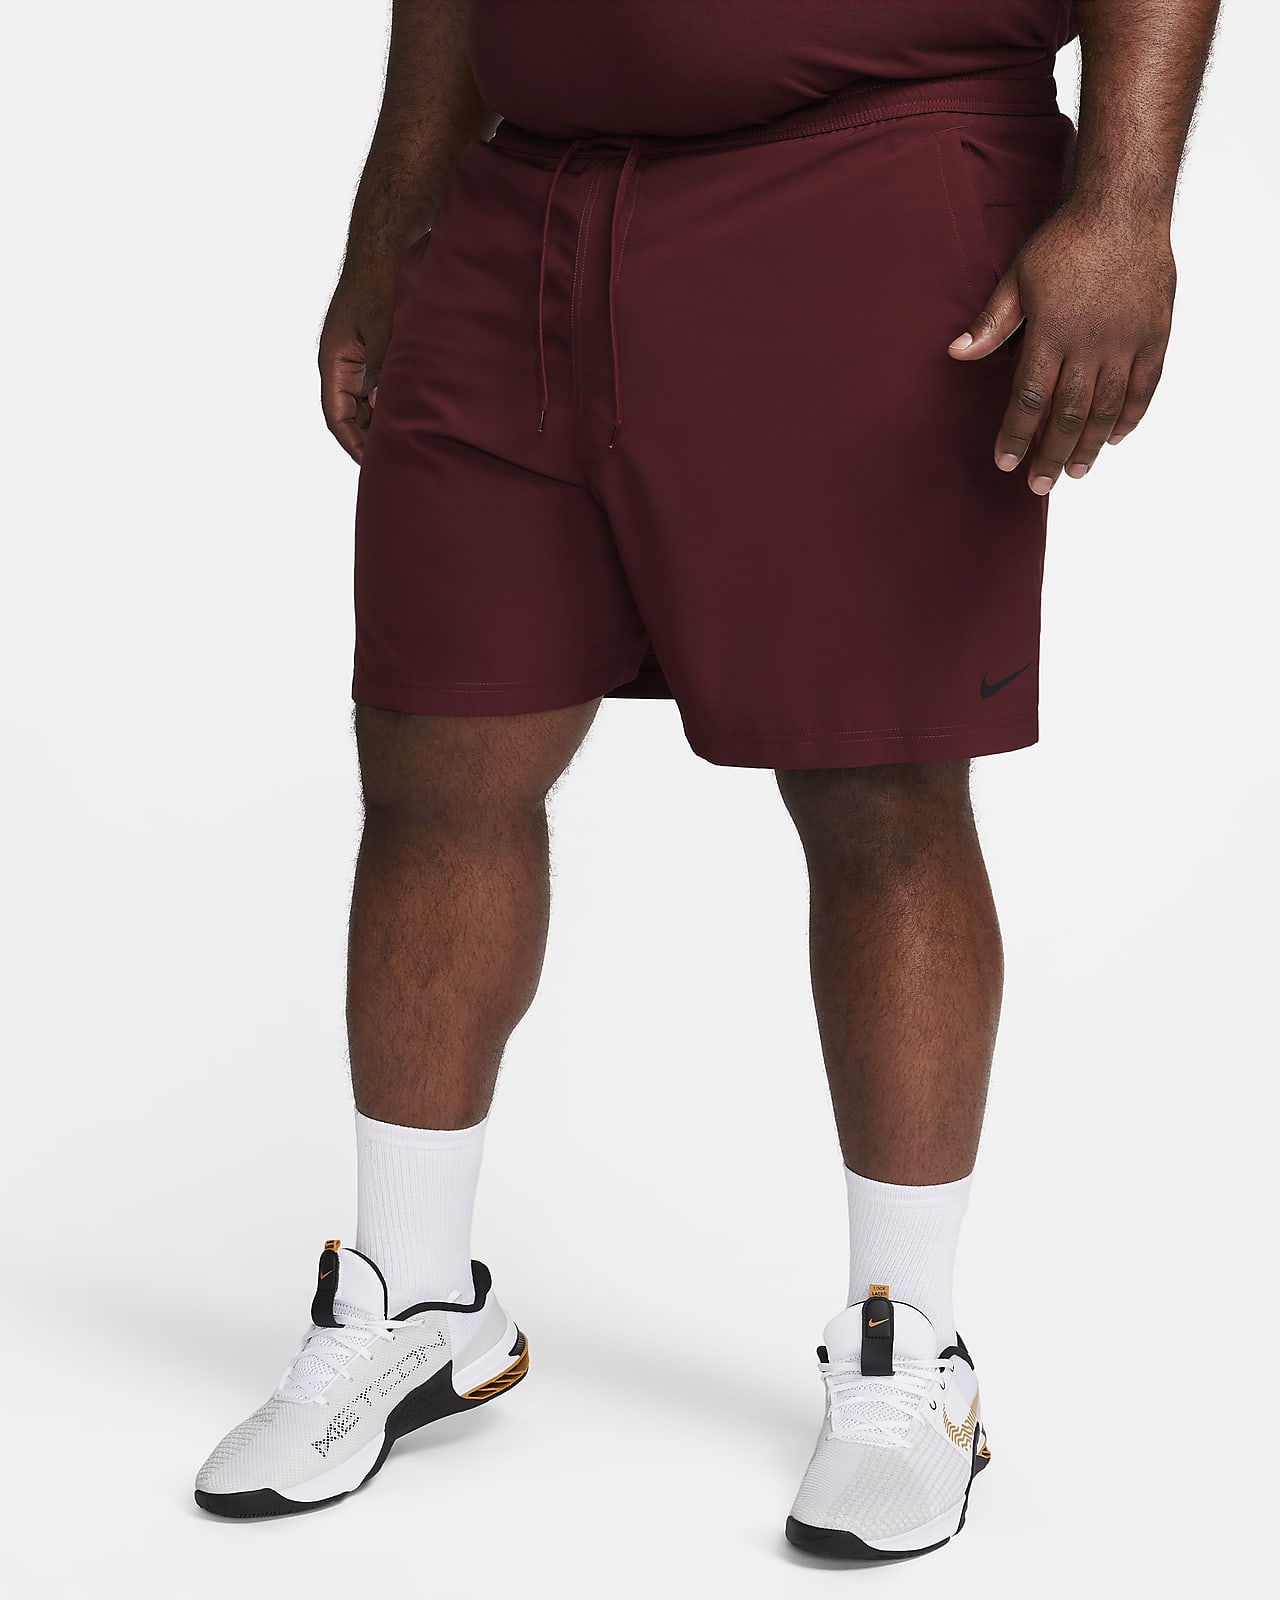 Nike Sportswear Tech Fleece Men's Shorts. Nike CA